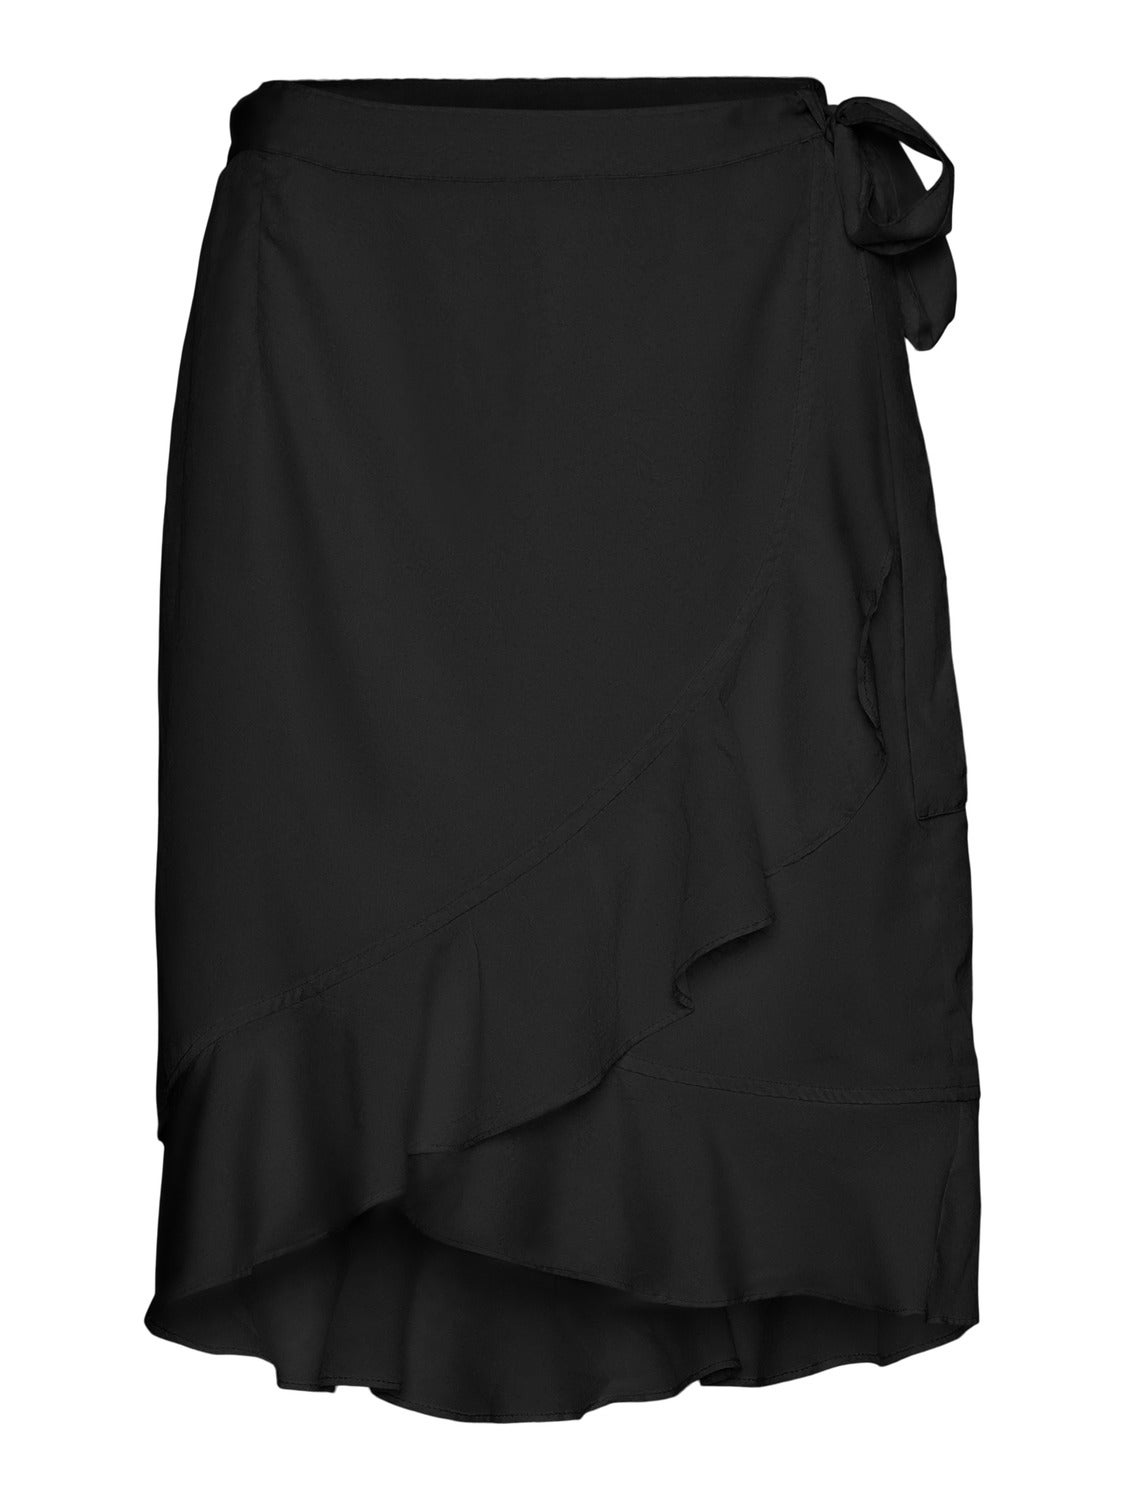 Wrap skirt 20% discount! | Vero Moda®